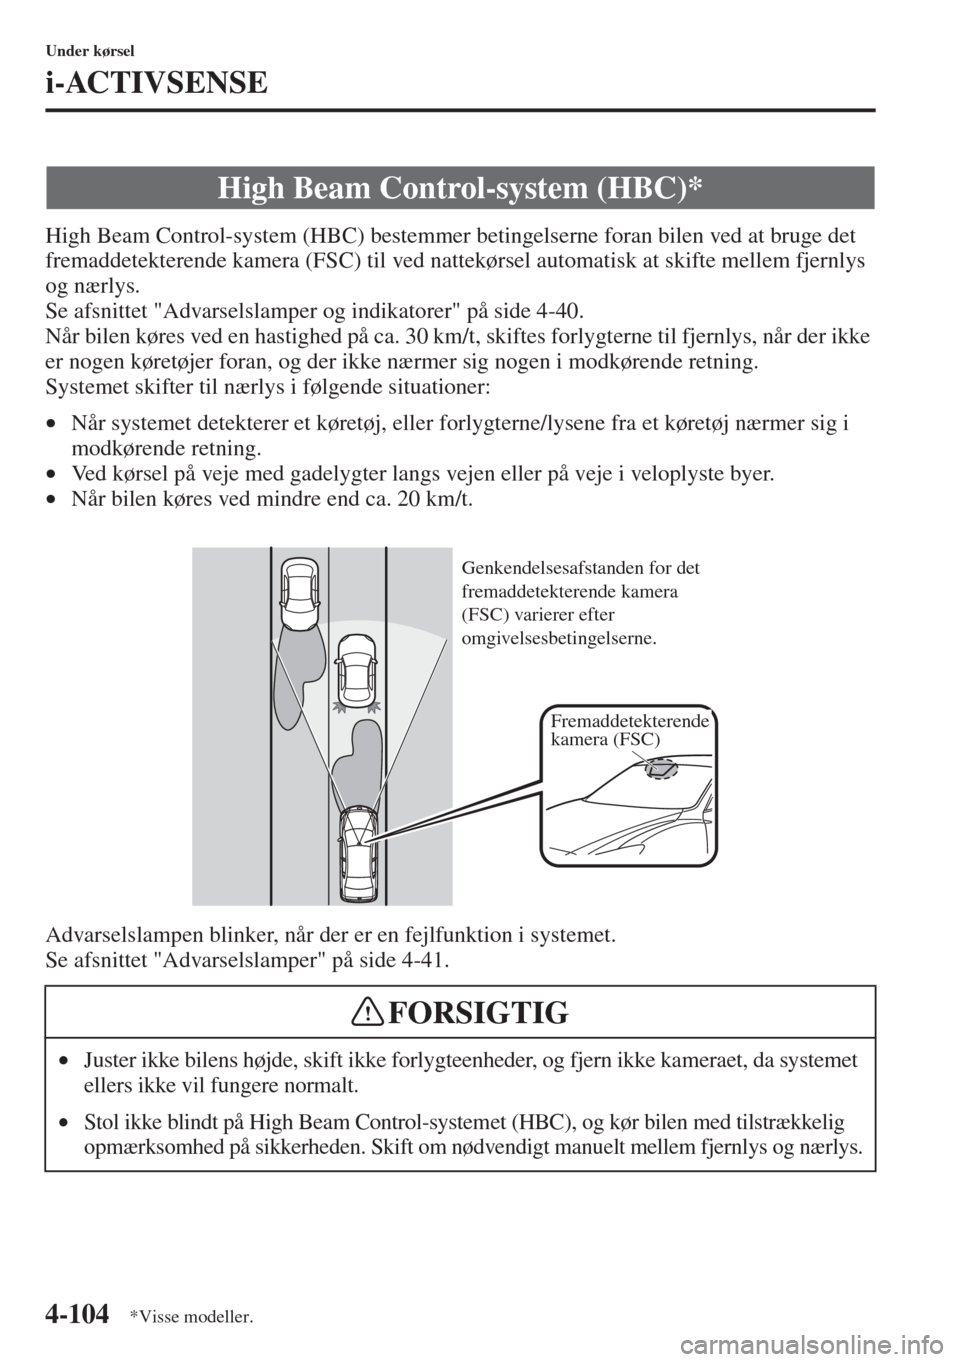 MAZDA MODEL 3 HATCHBACK 2015  Instruktionsbog (in Danish) 4-104
Under kørsel
i-ACTIVSENSE
High Beam Control-system (HBC) bestemmer betingelserne foran bilen ved at bruge det 
fremaddetekterende kamera (FSC) til ved nattekørsel automatisk at skifte mellem f